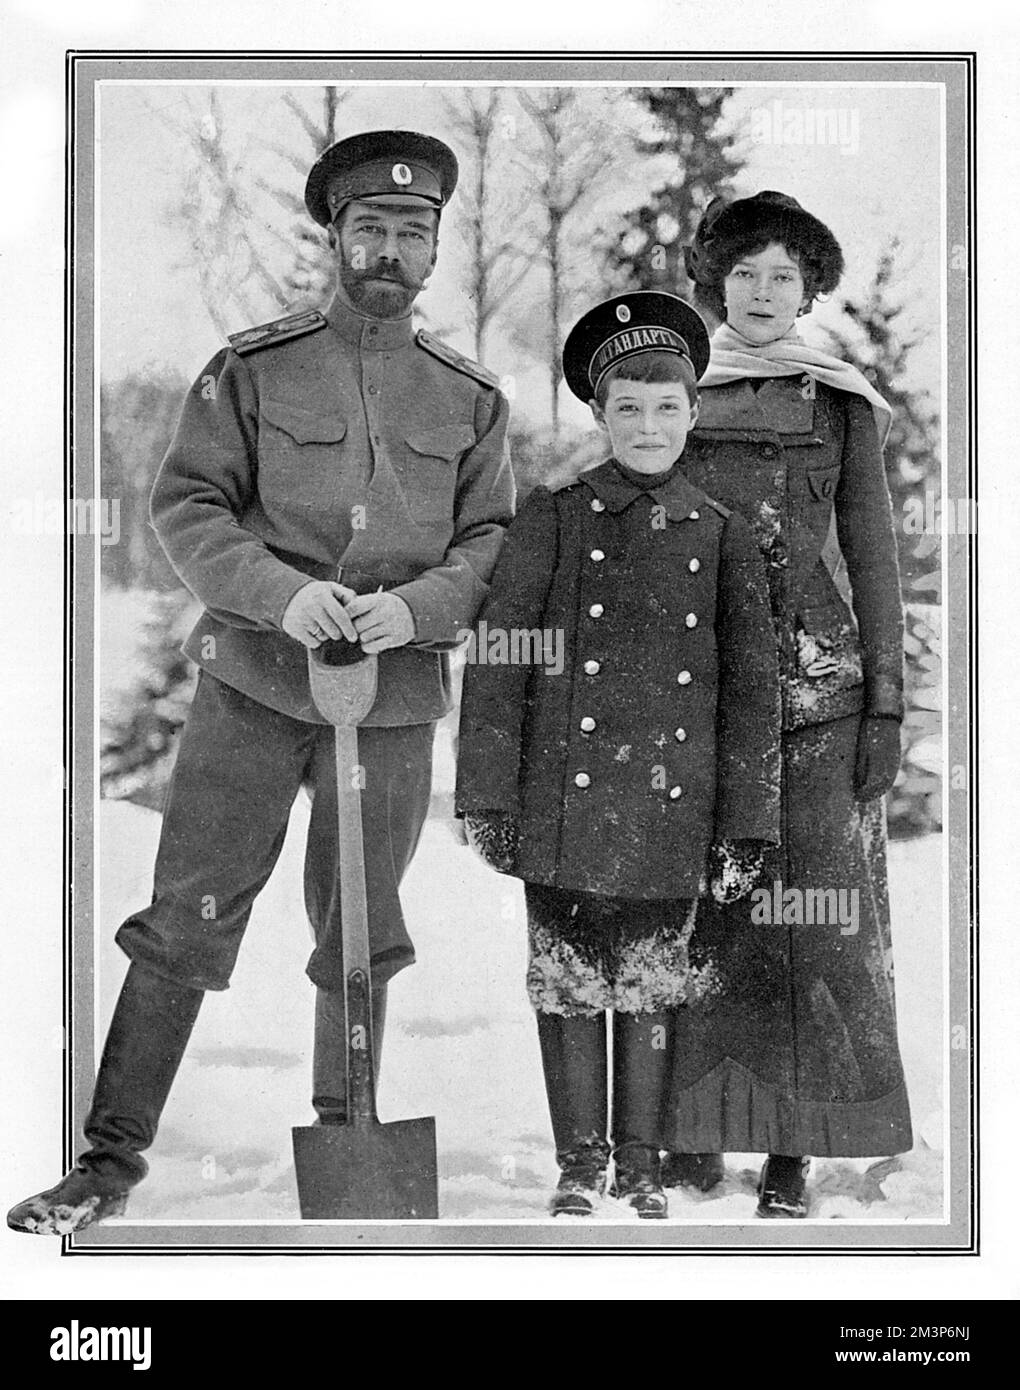 Le tsar Nicholas II de Russie en photo avec deux de ses enfants, la Grande duchesse Tatiana et Alexei, le Tsarevitch, construisant une fortification de la neige dans le domaine du Palais impérial à Tsarskoye Selo, à Petrograd. 1915 Banque D'Images